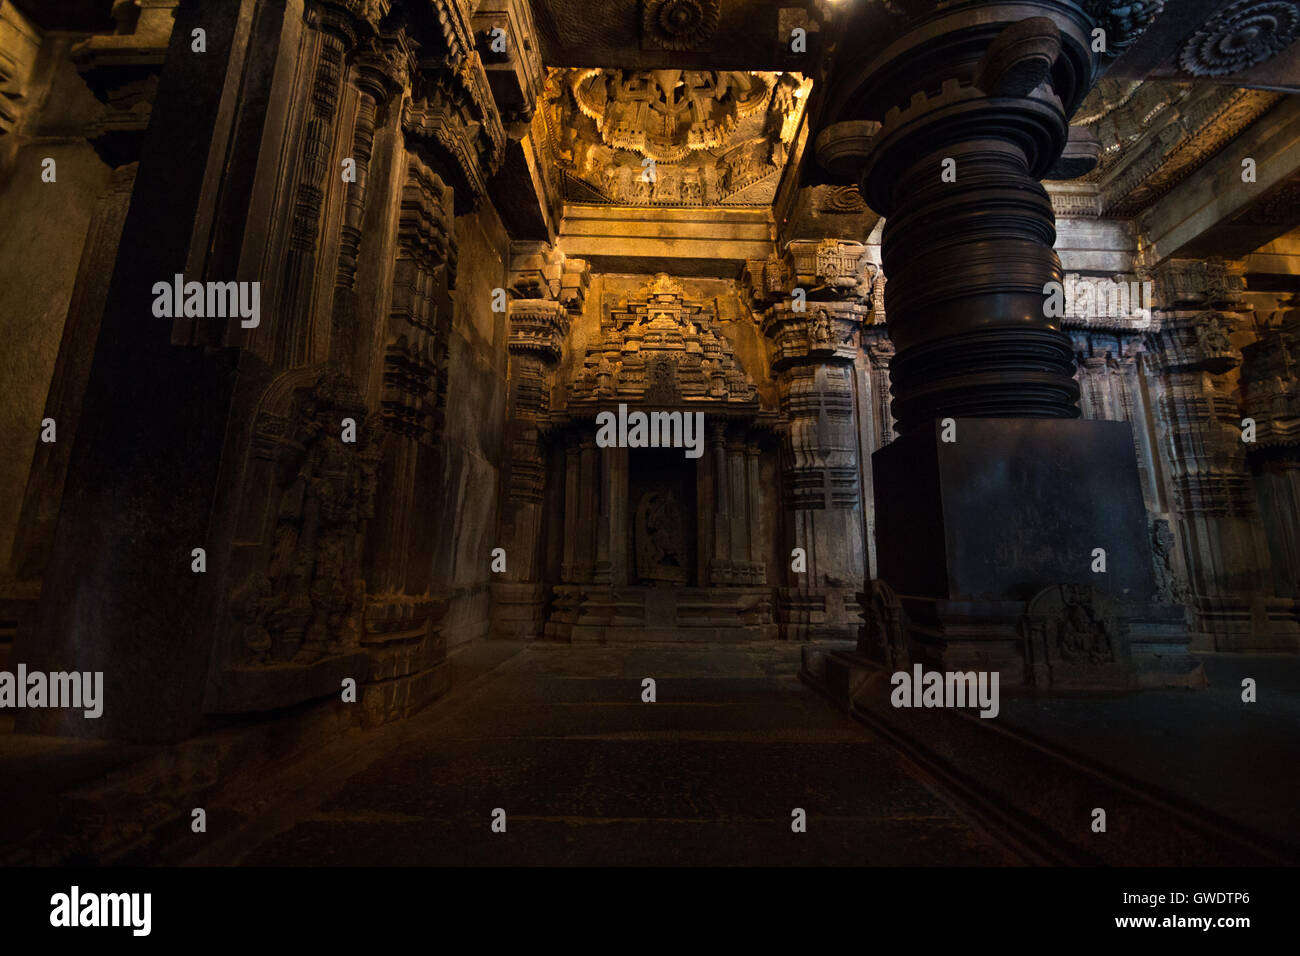 Vue de l'intérieur de Temple. Sanctum du Chennakesava temple, Somanathapura,Karnataka, Inde, Asie Banque D'Images